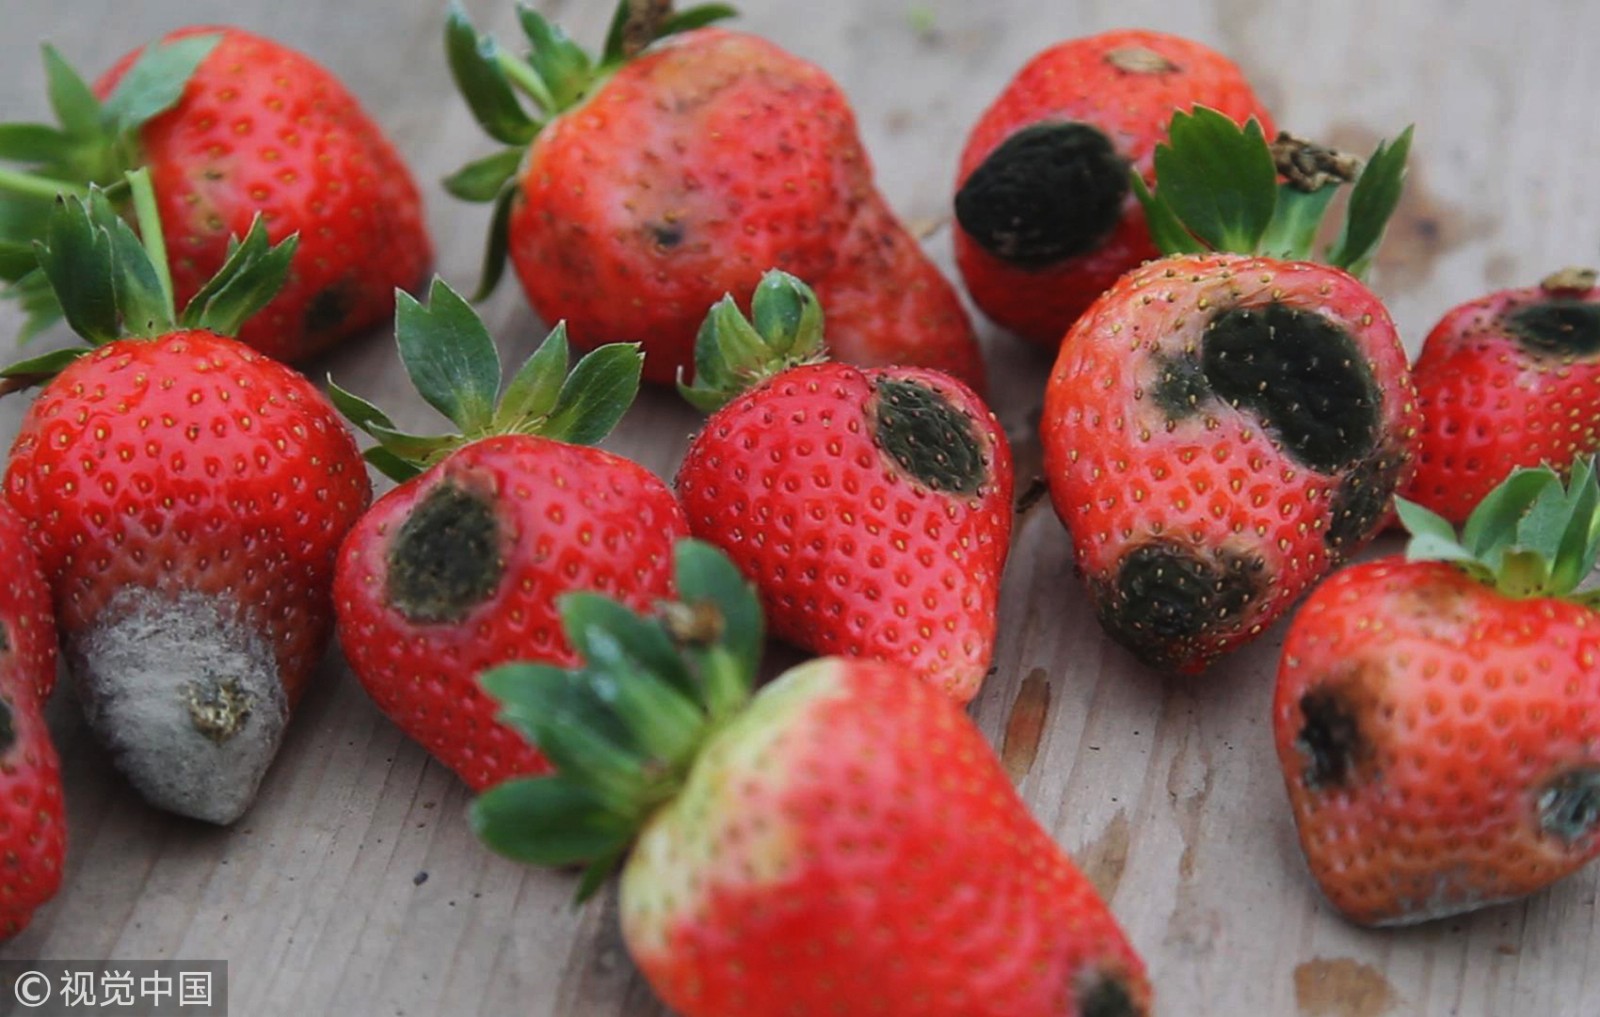 心疼!大雪致草莓烂在果园,每天倒数百斤